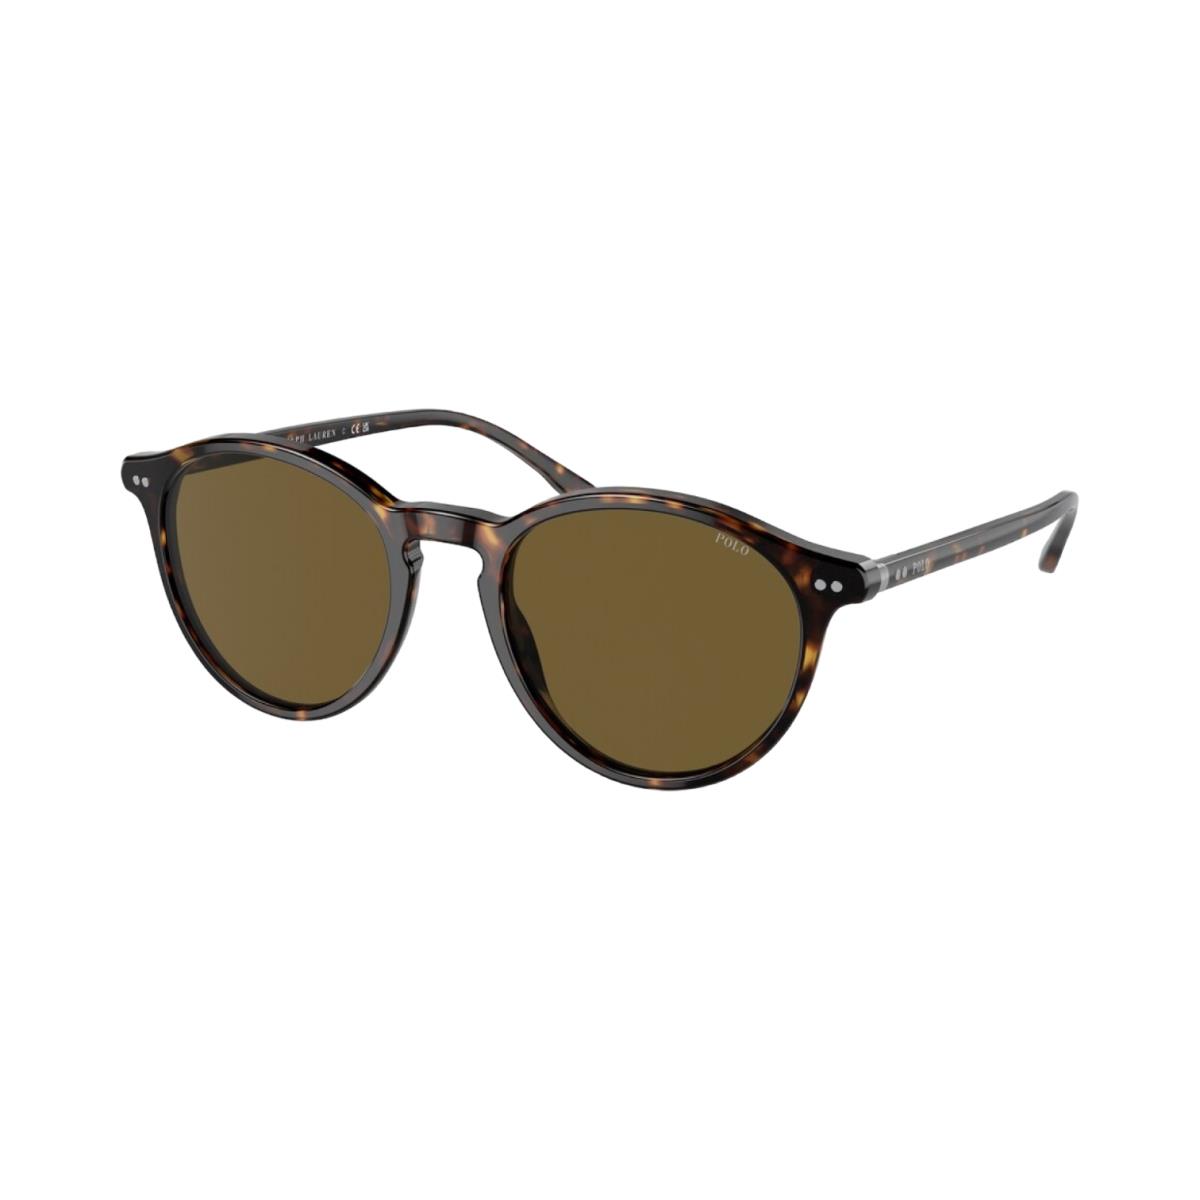 Polo Ralph Lauren Sunglasses PH4193 - Shiny Dark Havana Frame Olive Green Lens